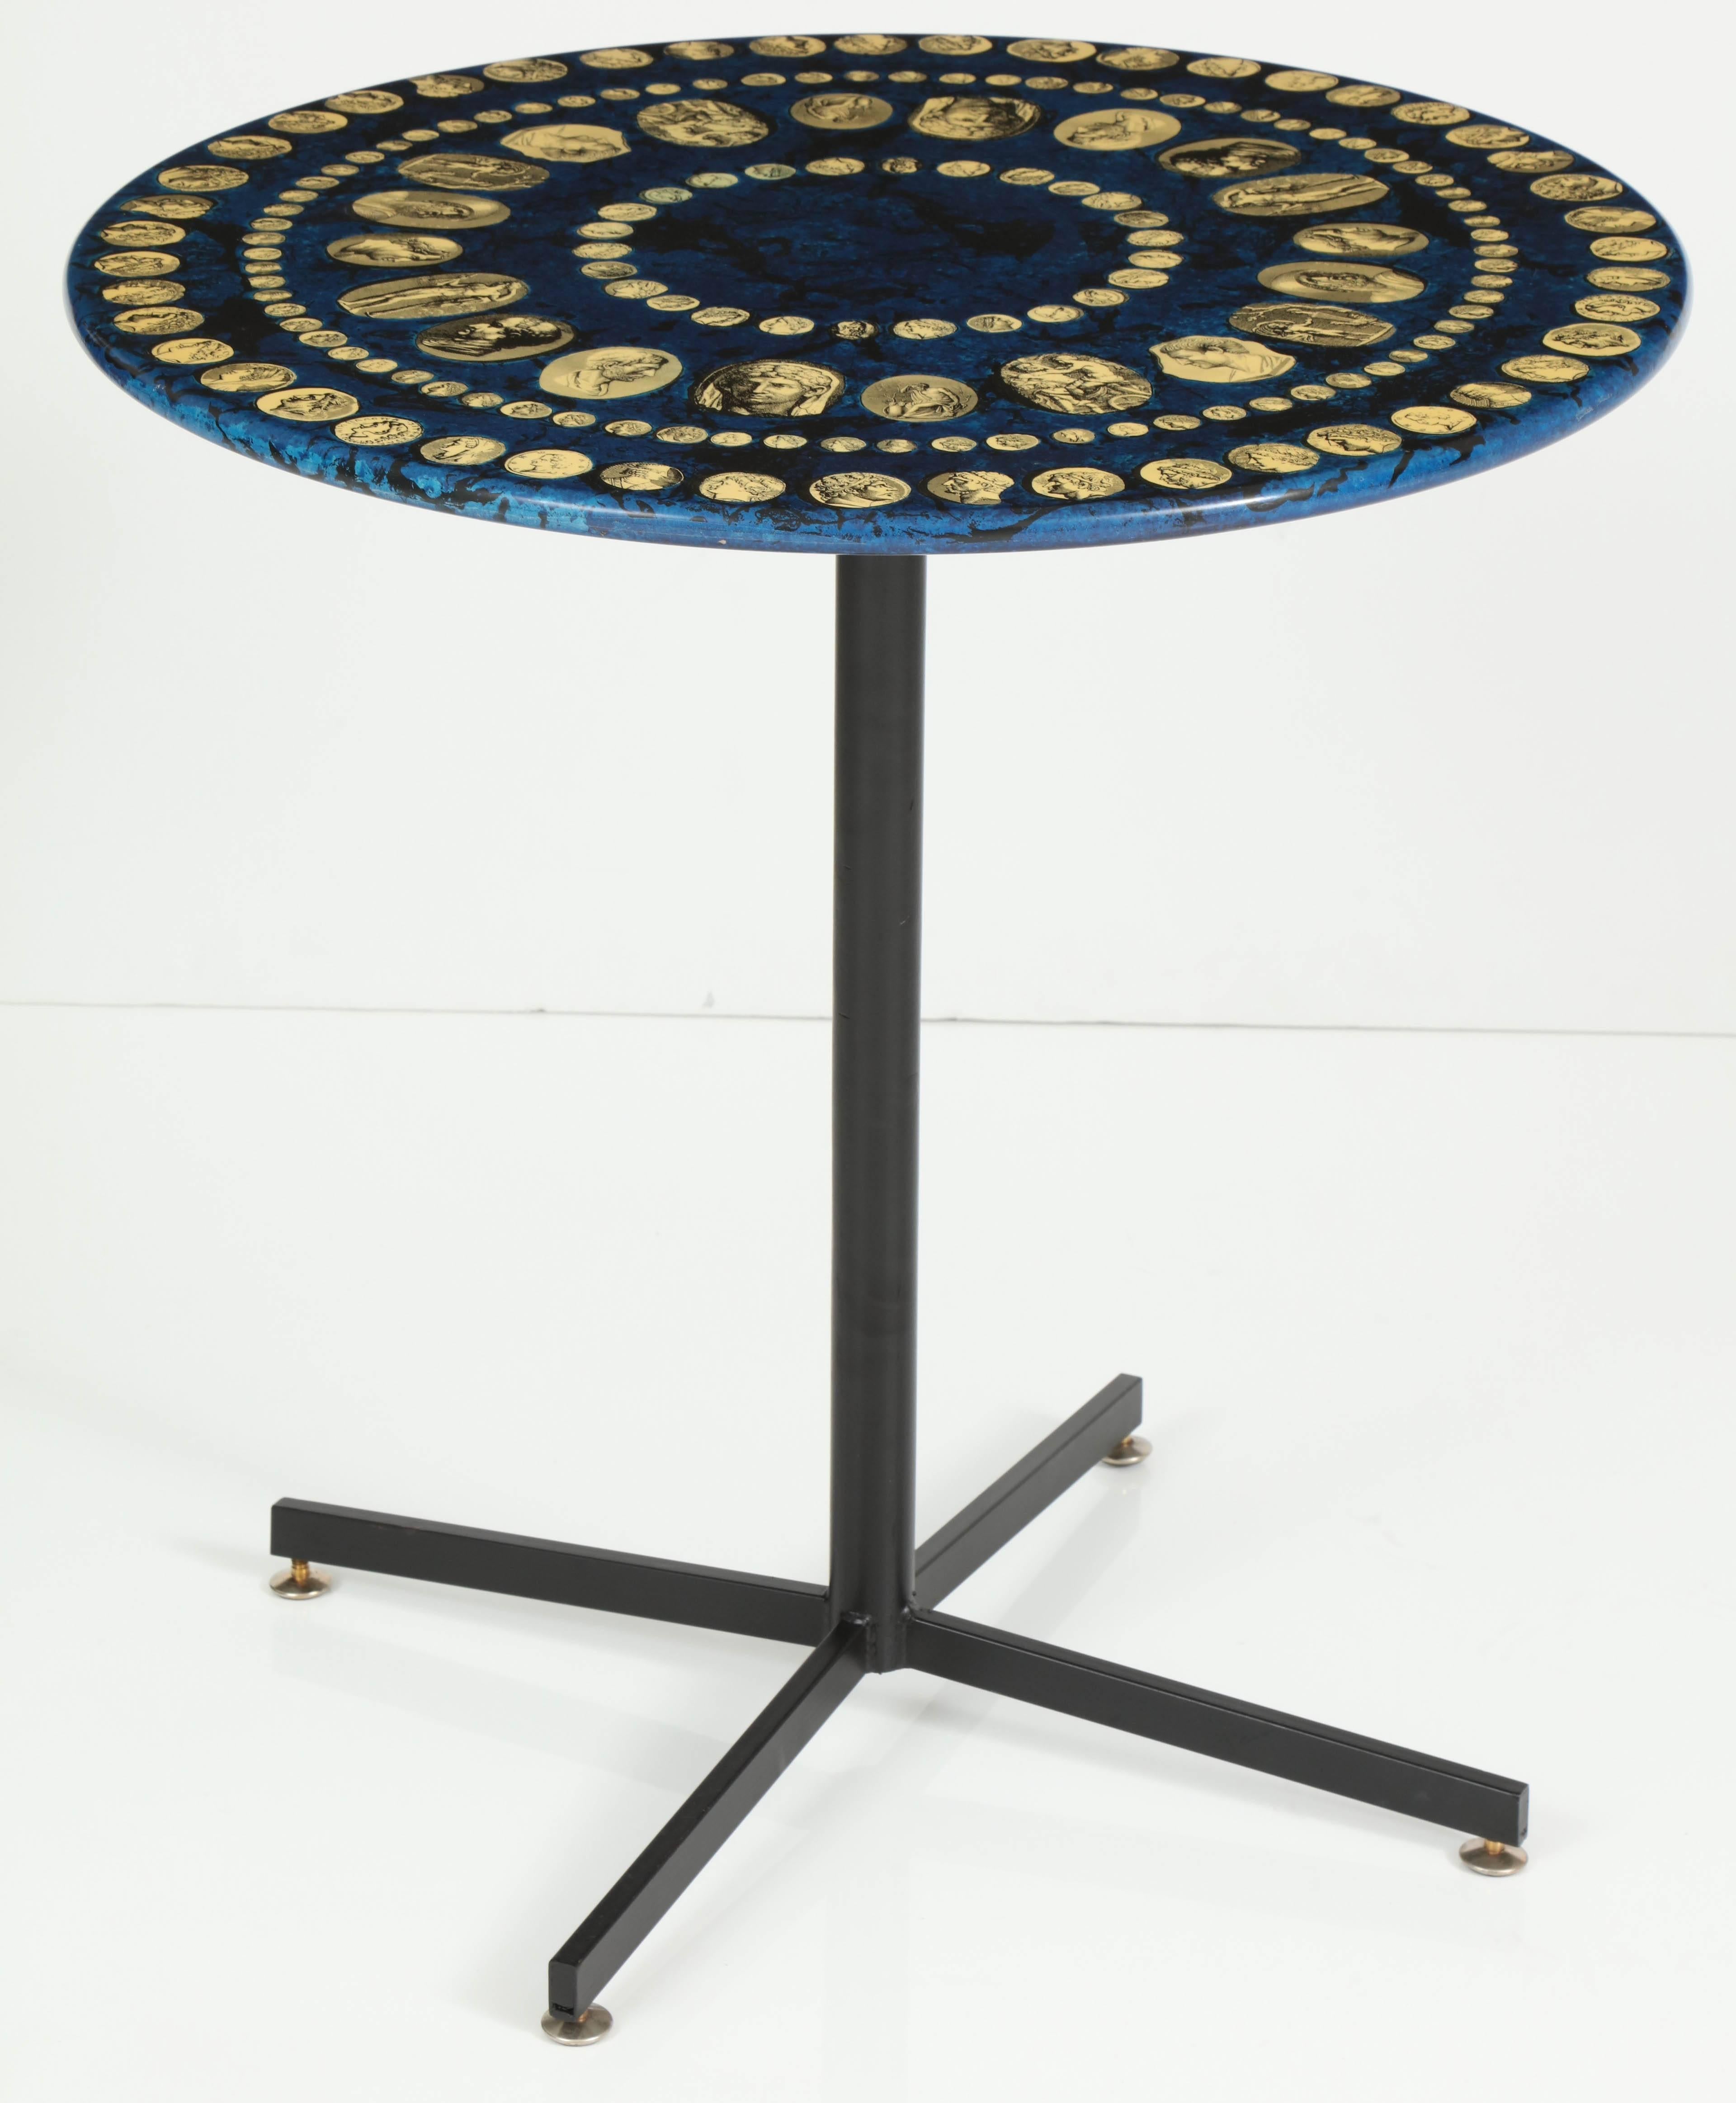 Bien qu'elle soit relativement petite, cette table fait une grande impression. Produit dans la série Cammei dans les années 1950, ce même modèle a été présenté et publié dans l'exposition La Folie Pratique au Musée des Arts Décoratifs de Paris.